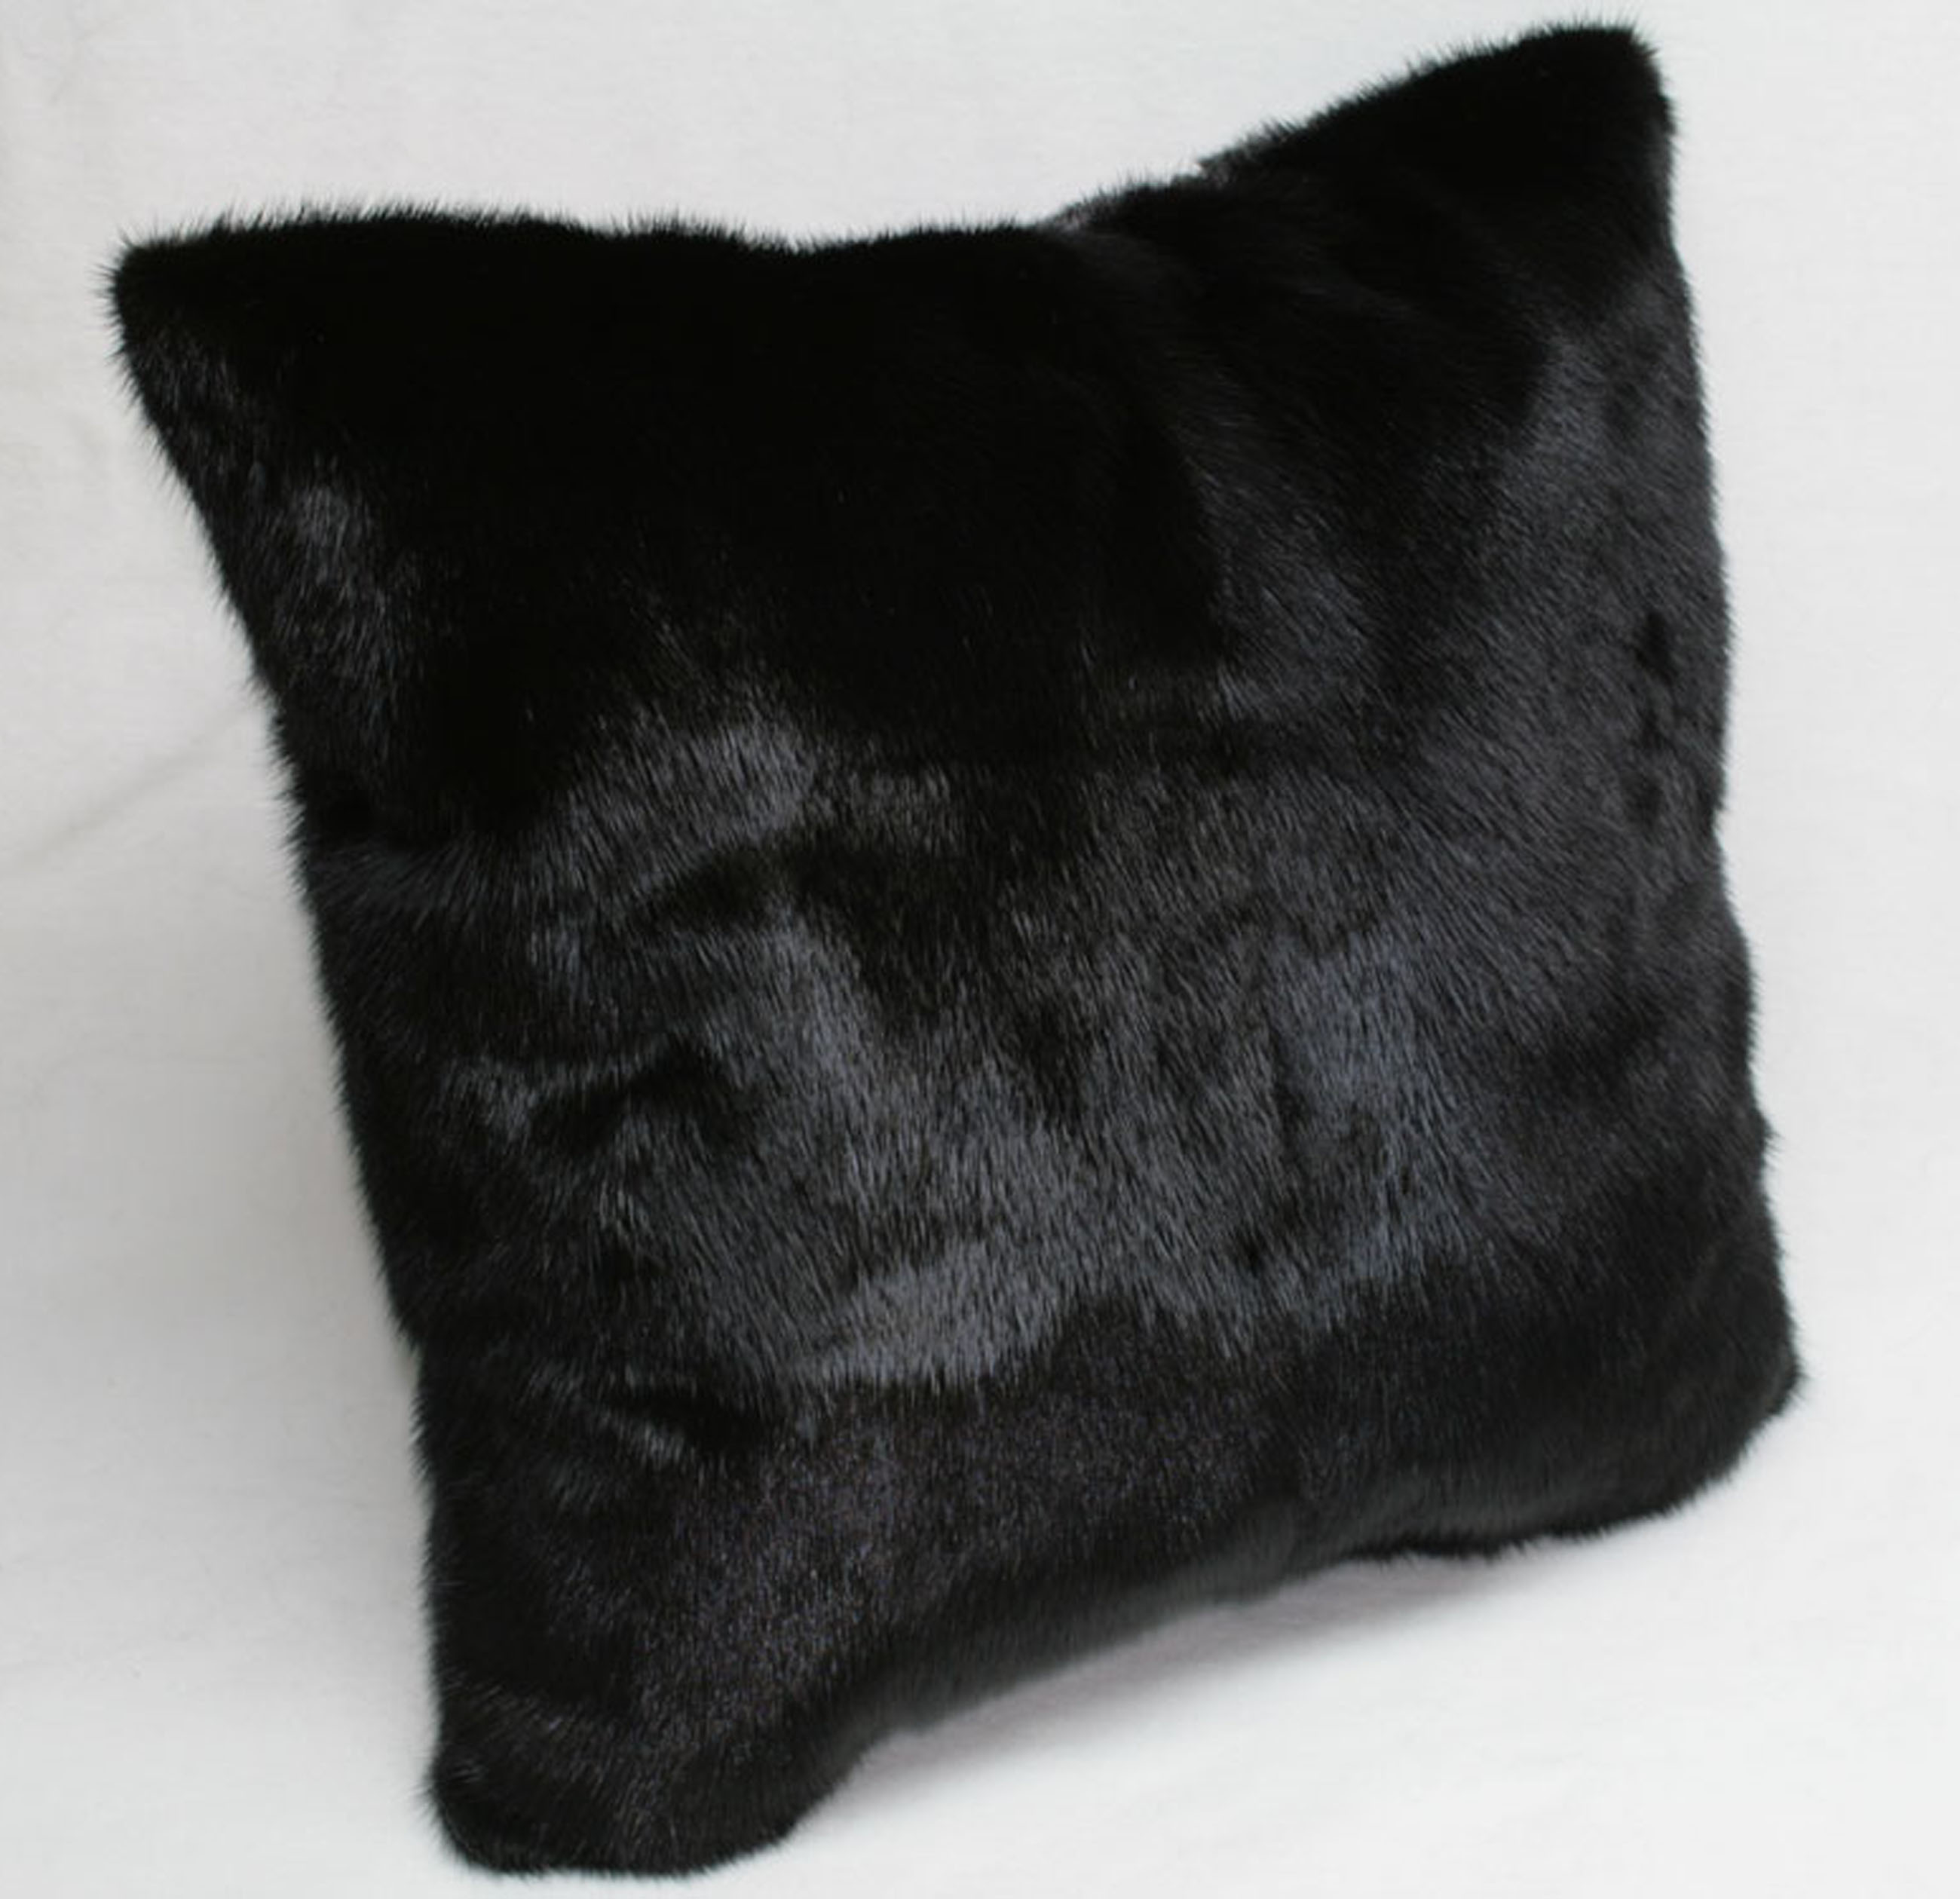 Mink fur pillow - fur on both sides